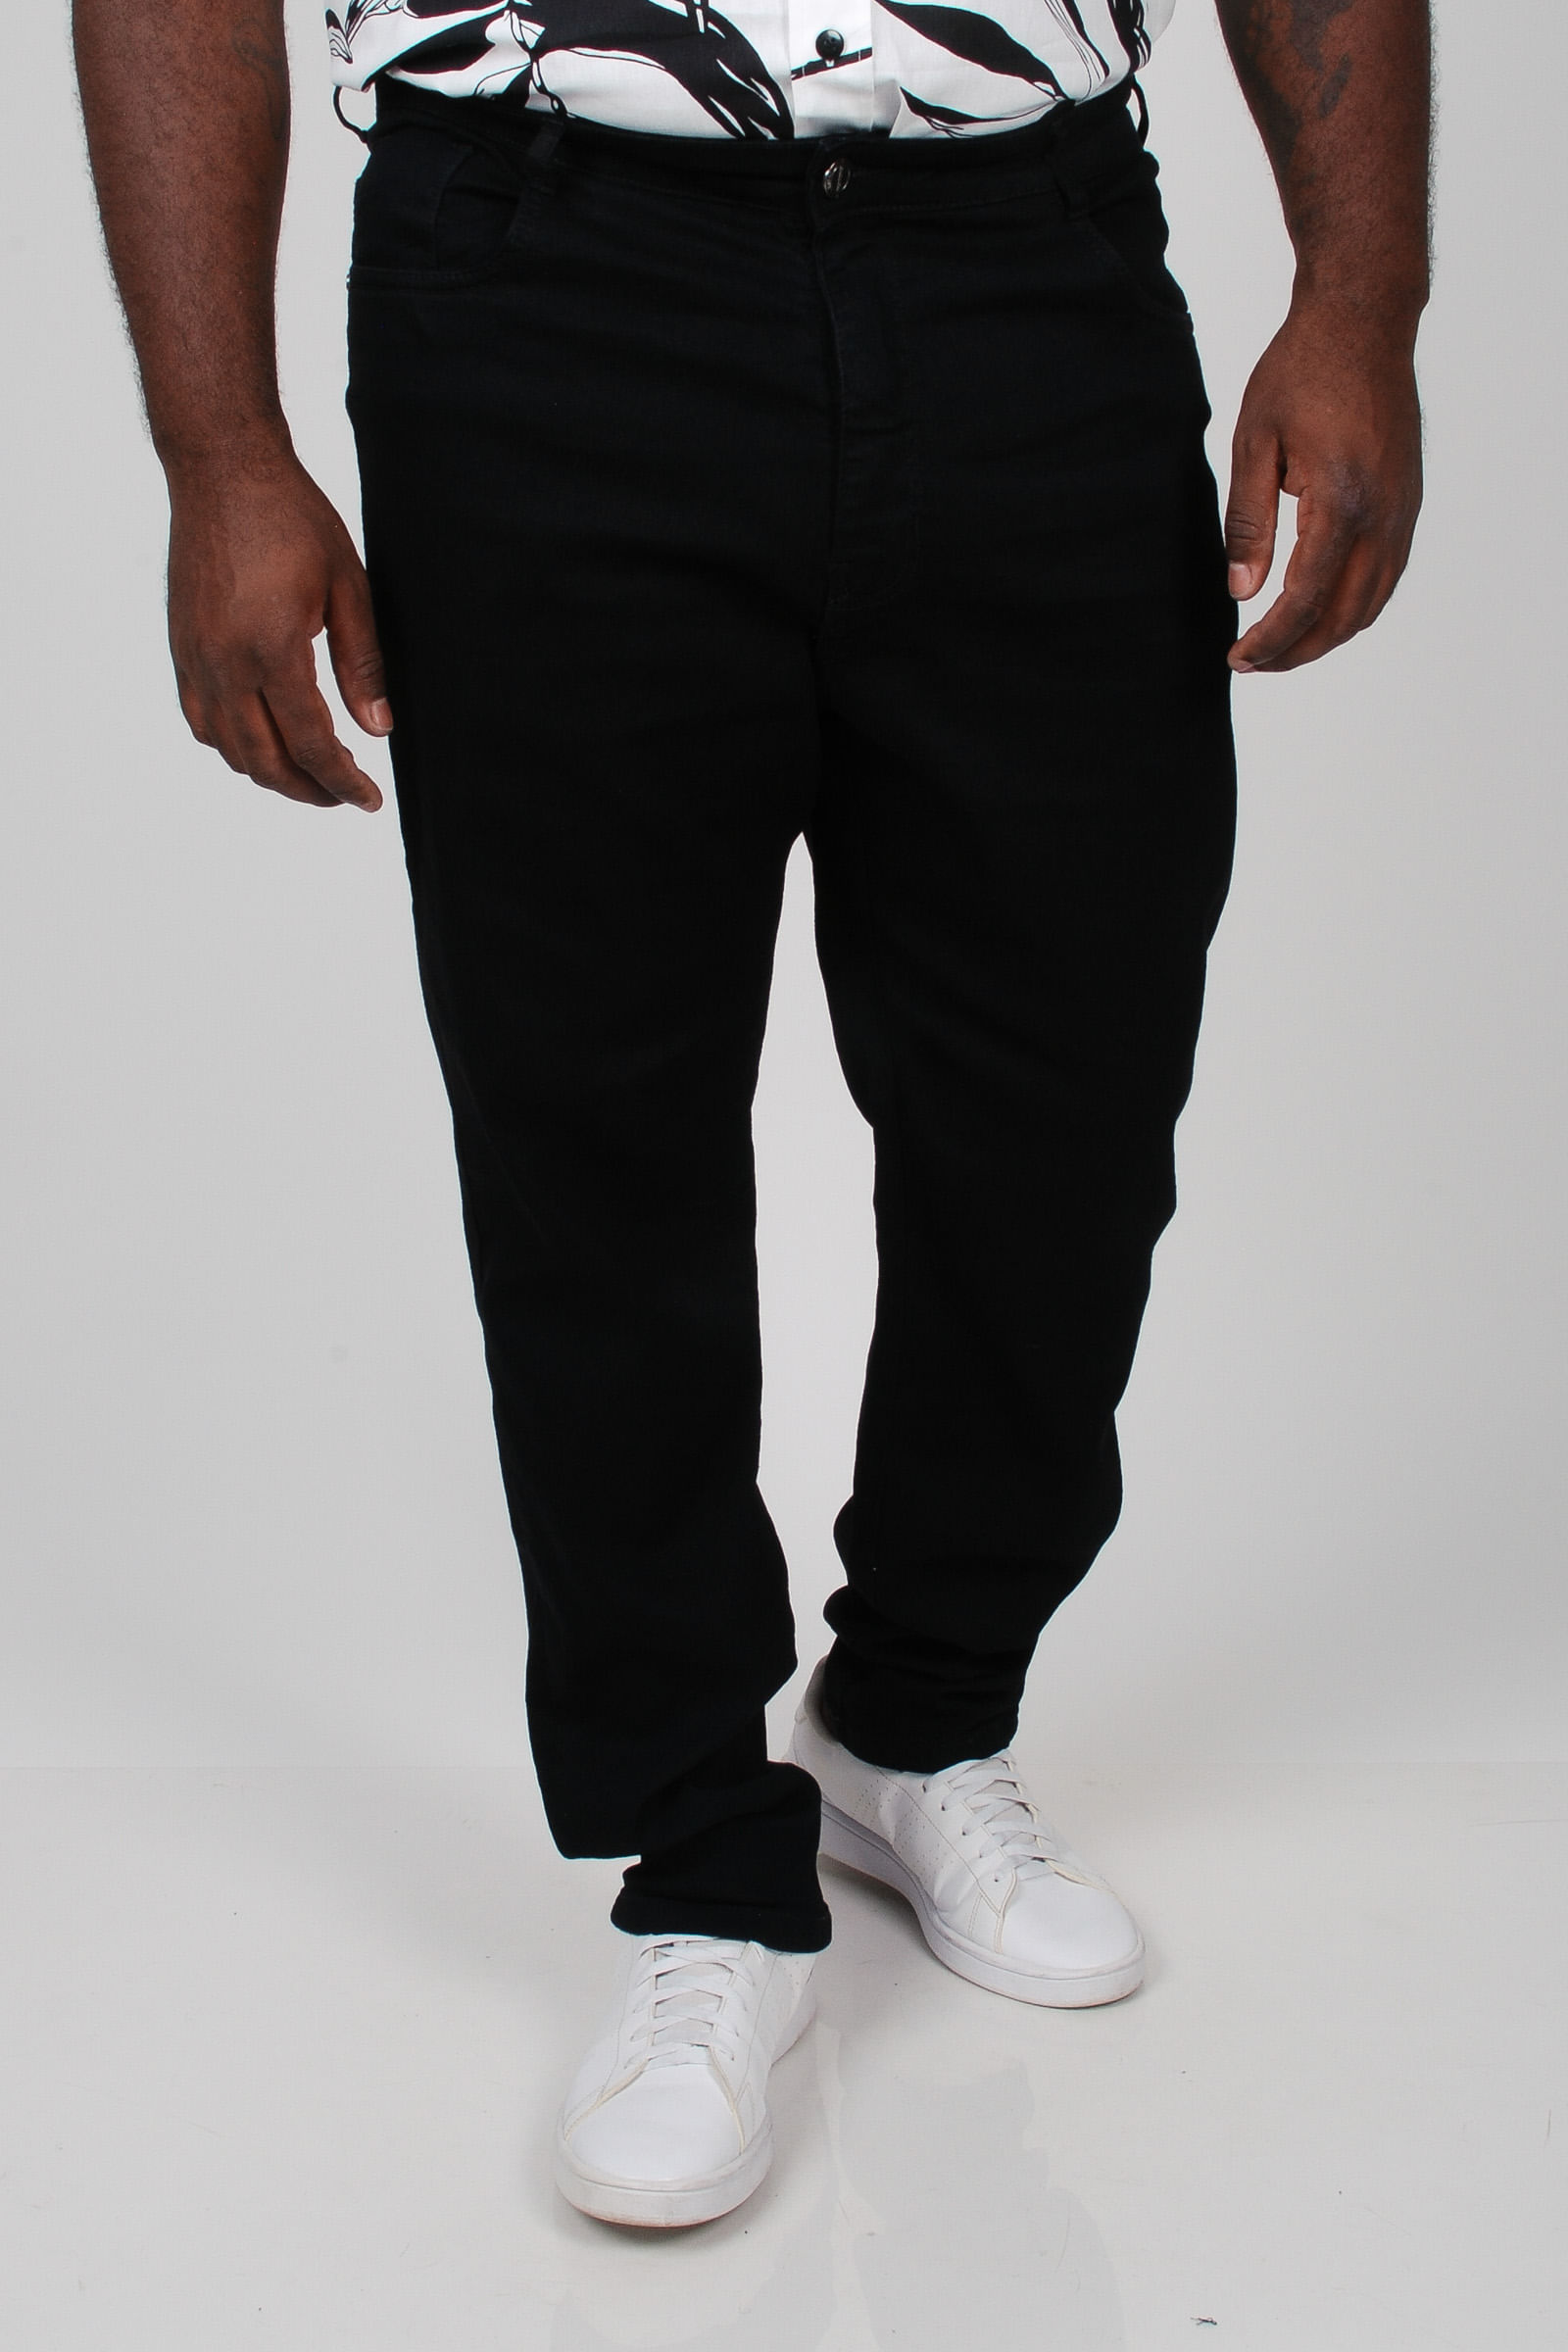 Calca-skinny-black-jeans-plus-size_0103_3